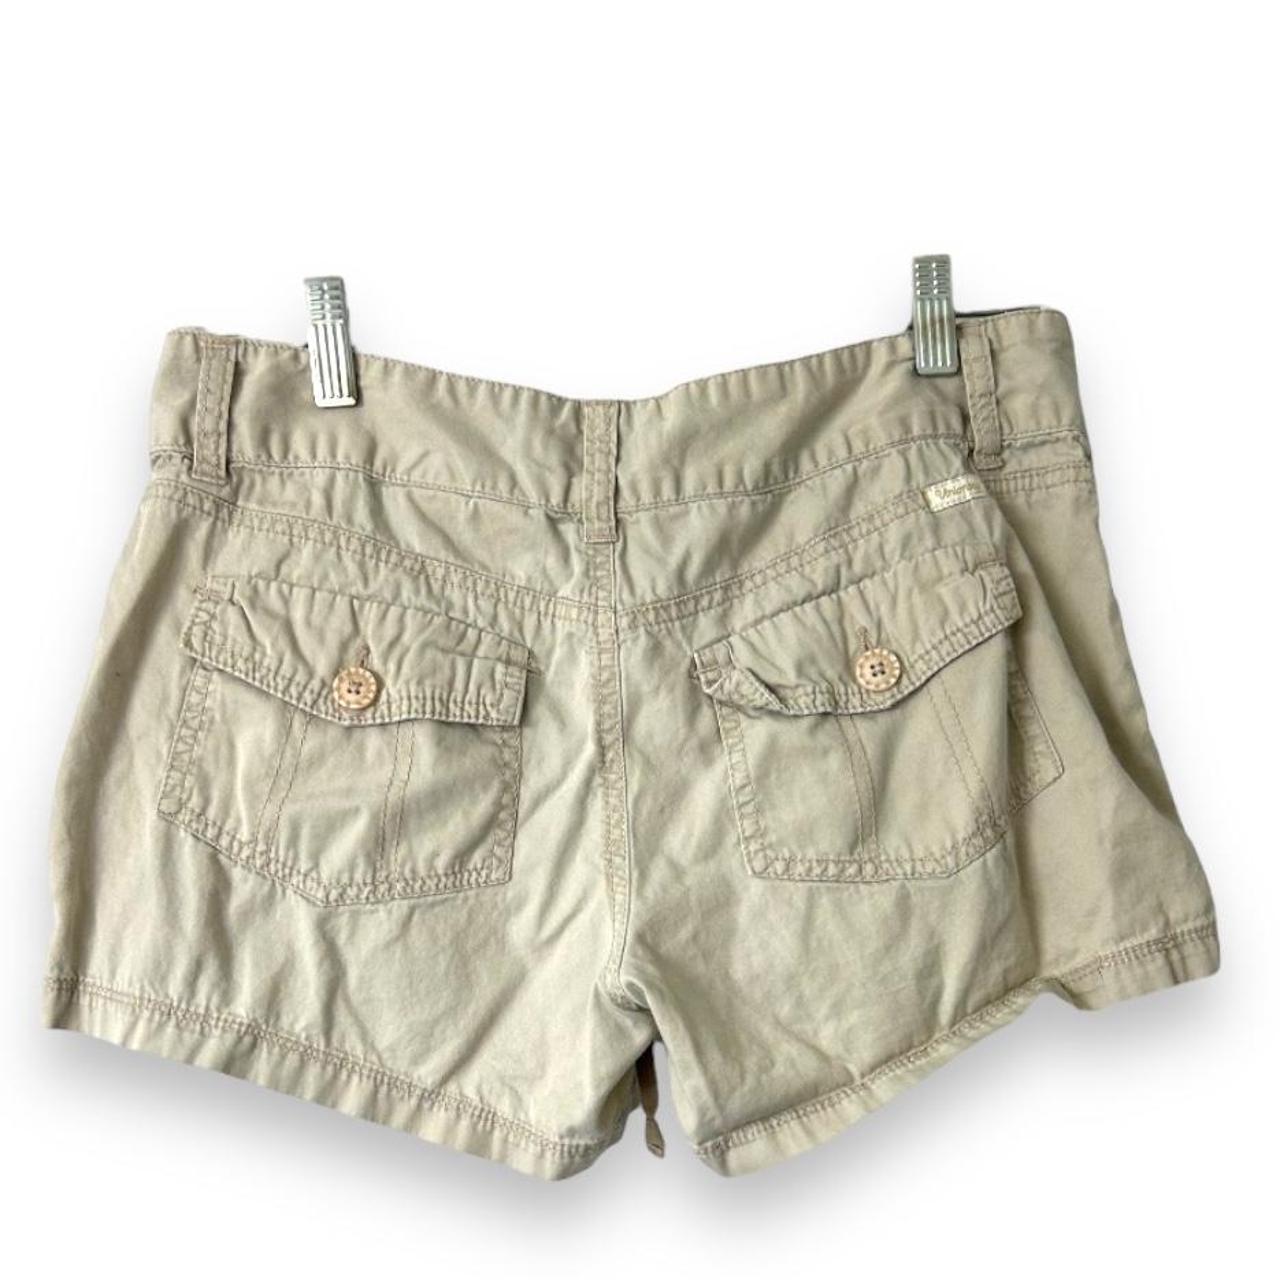 Union bay shorts, 7 Measurements 14” waist 7.5”... - Depop